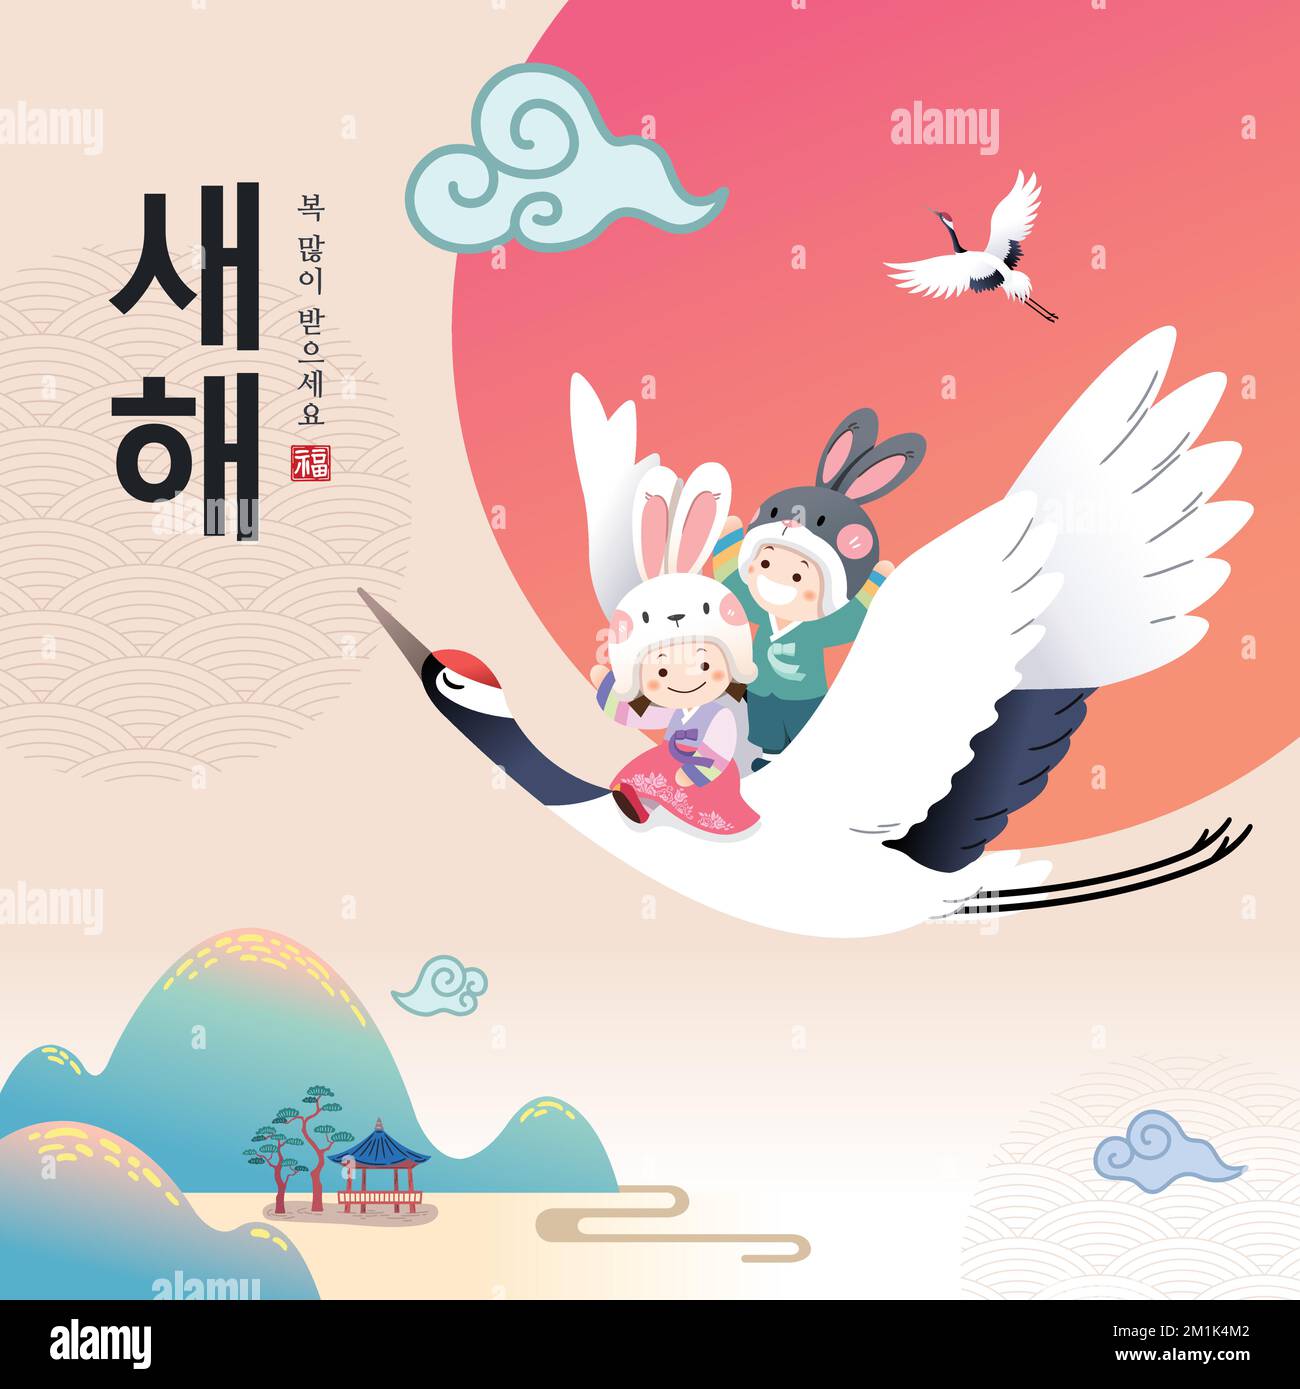 Design de l'événement du nouvel an coréen. Pour célébrer l'année du lapin, les enfants qui portent le hanbok sont assis sur des grues et volent. Illustration de Vecteur